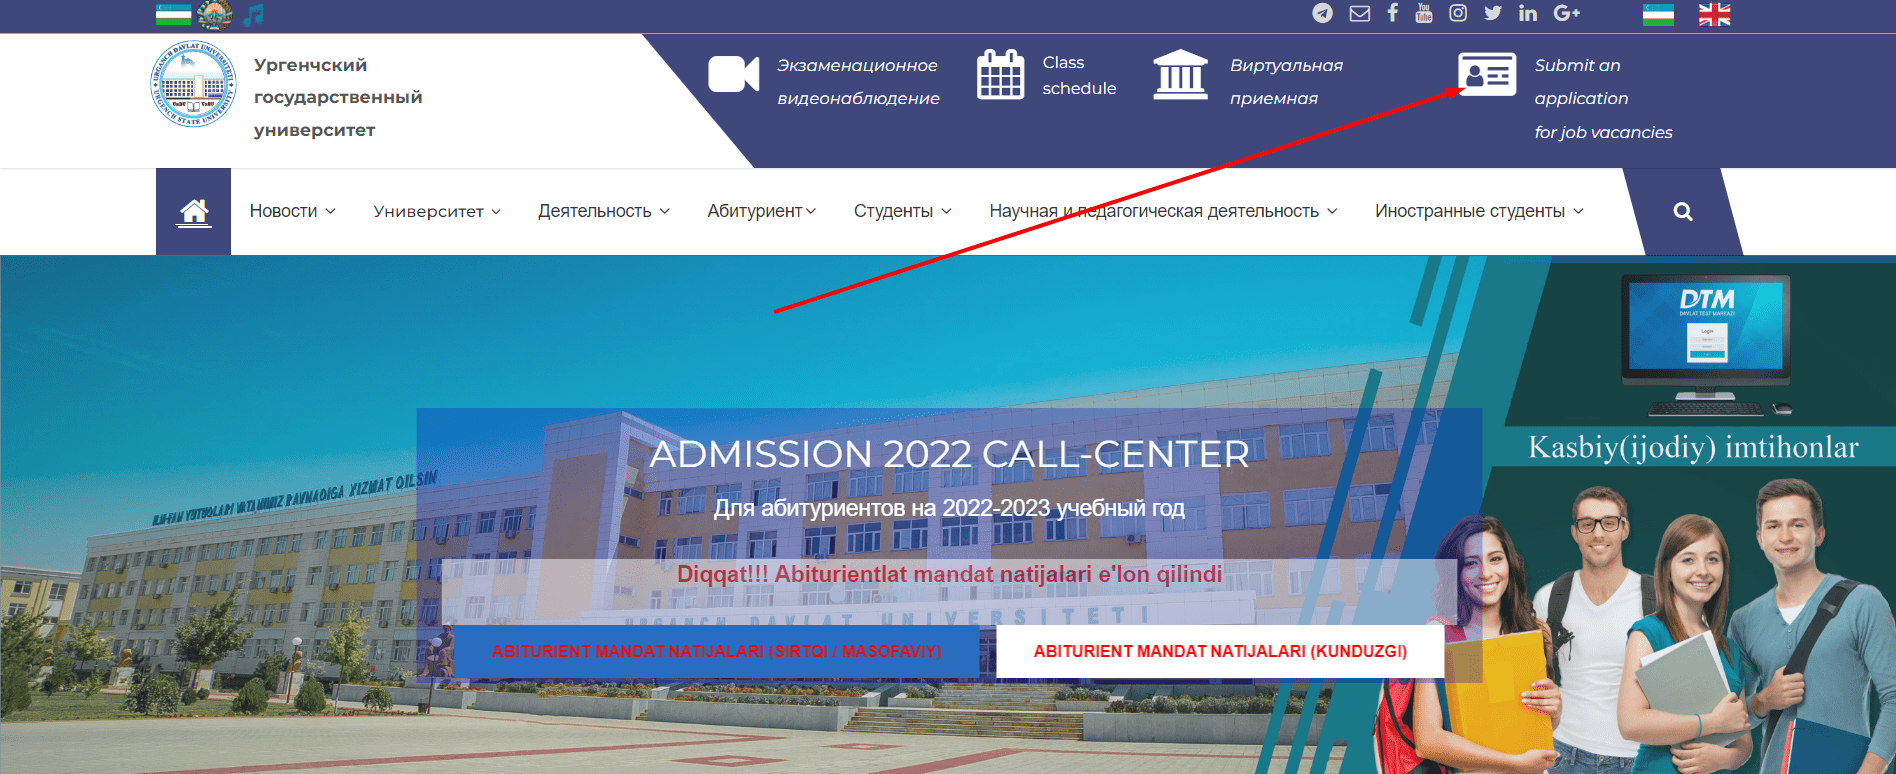 Ургенчский государственный университет (urdu.uz) – официальный сайт